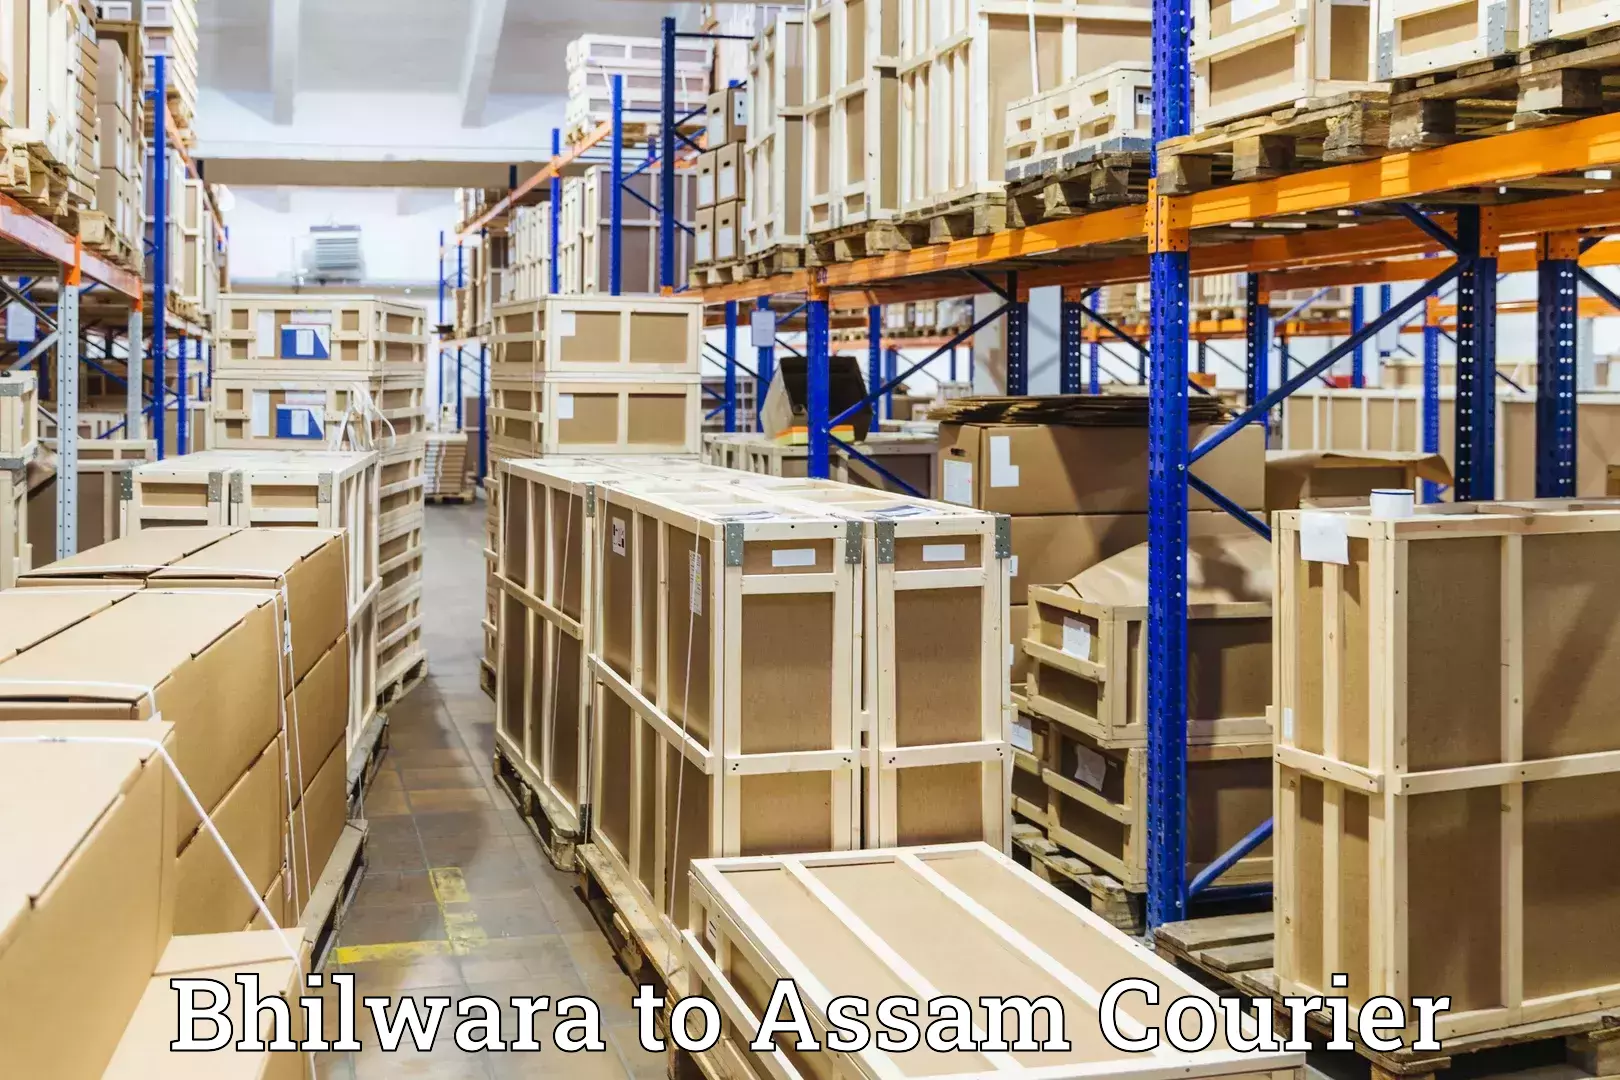 Luggage delivery optimization Bhilwara to Rangia